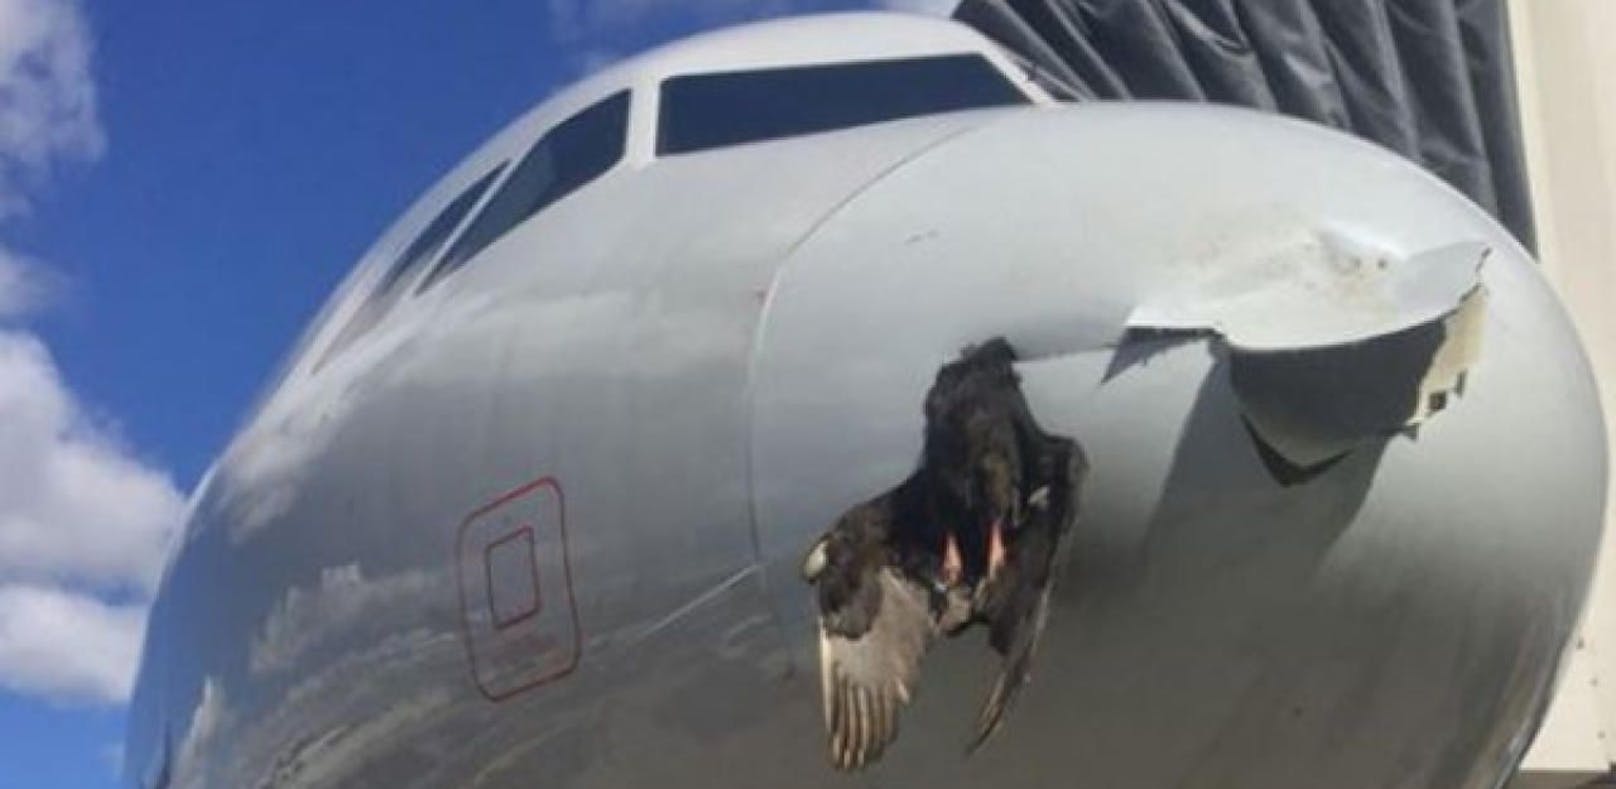 Kurz vor der Landung passierte es: Ein Vogel prallte gegen die Nase des Flugzeugs und blieb anschließend stecken.